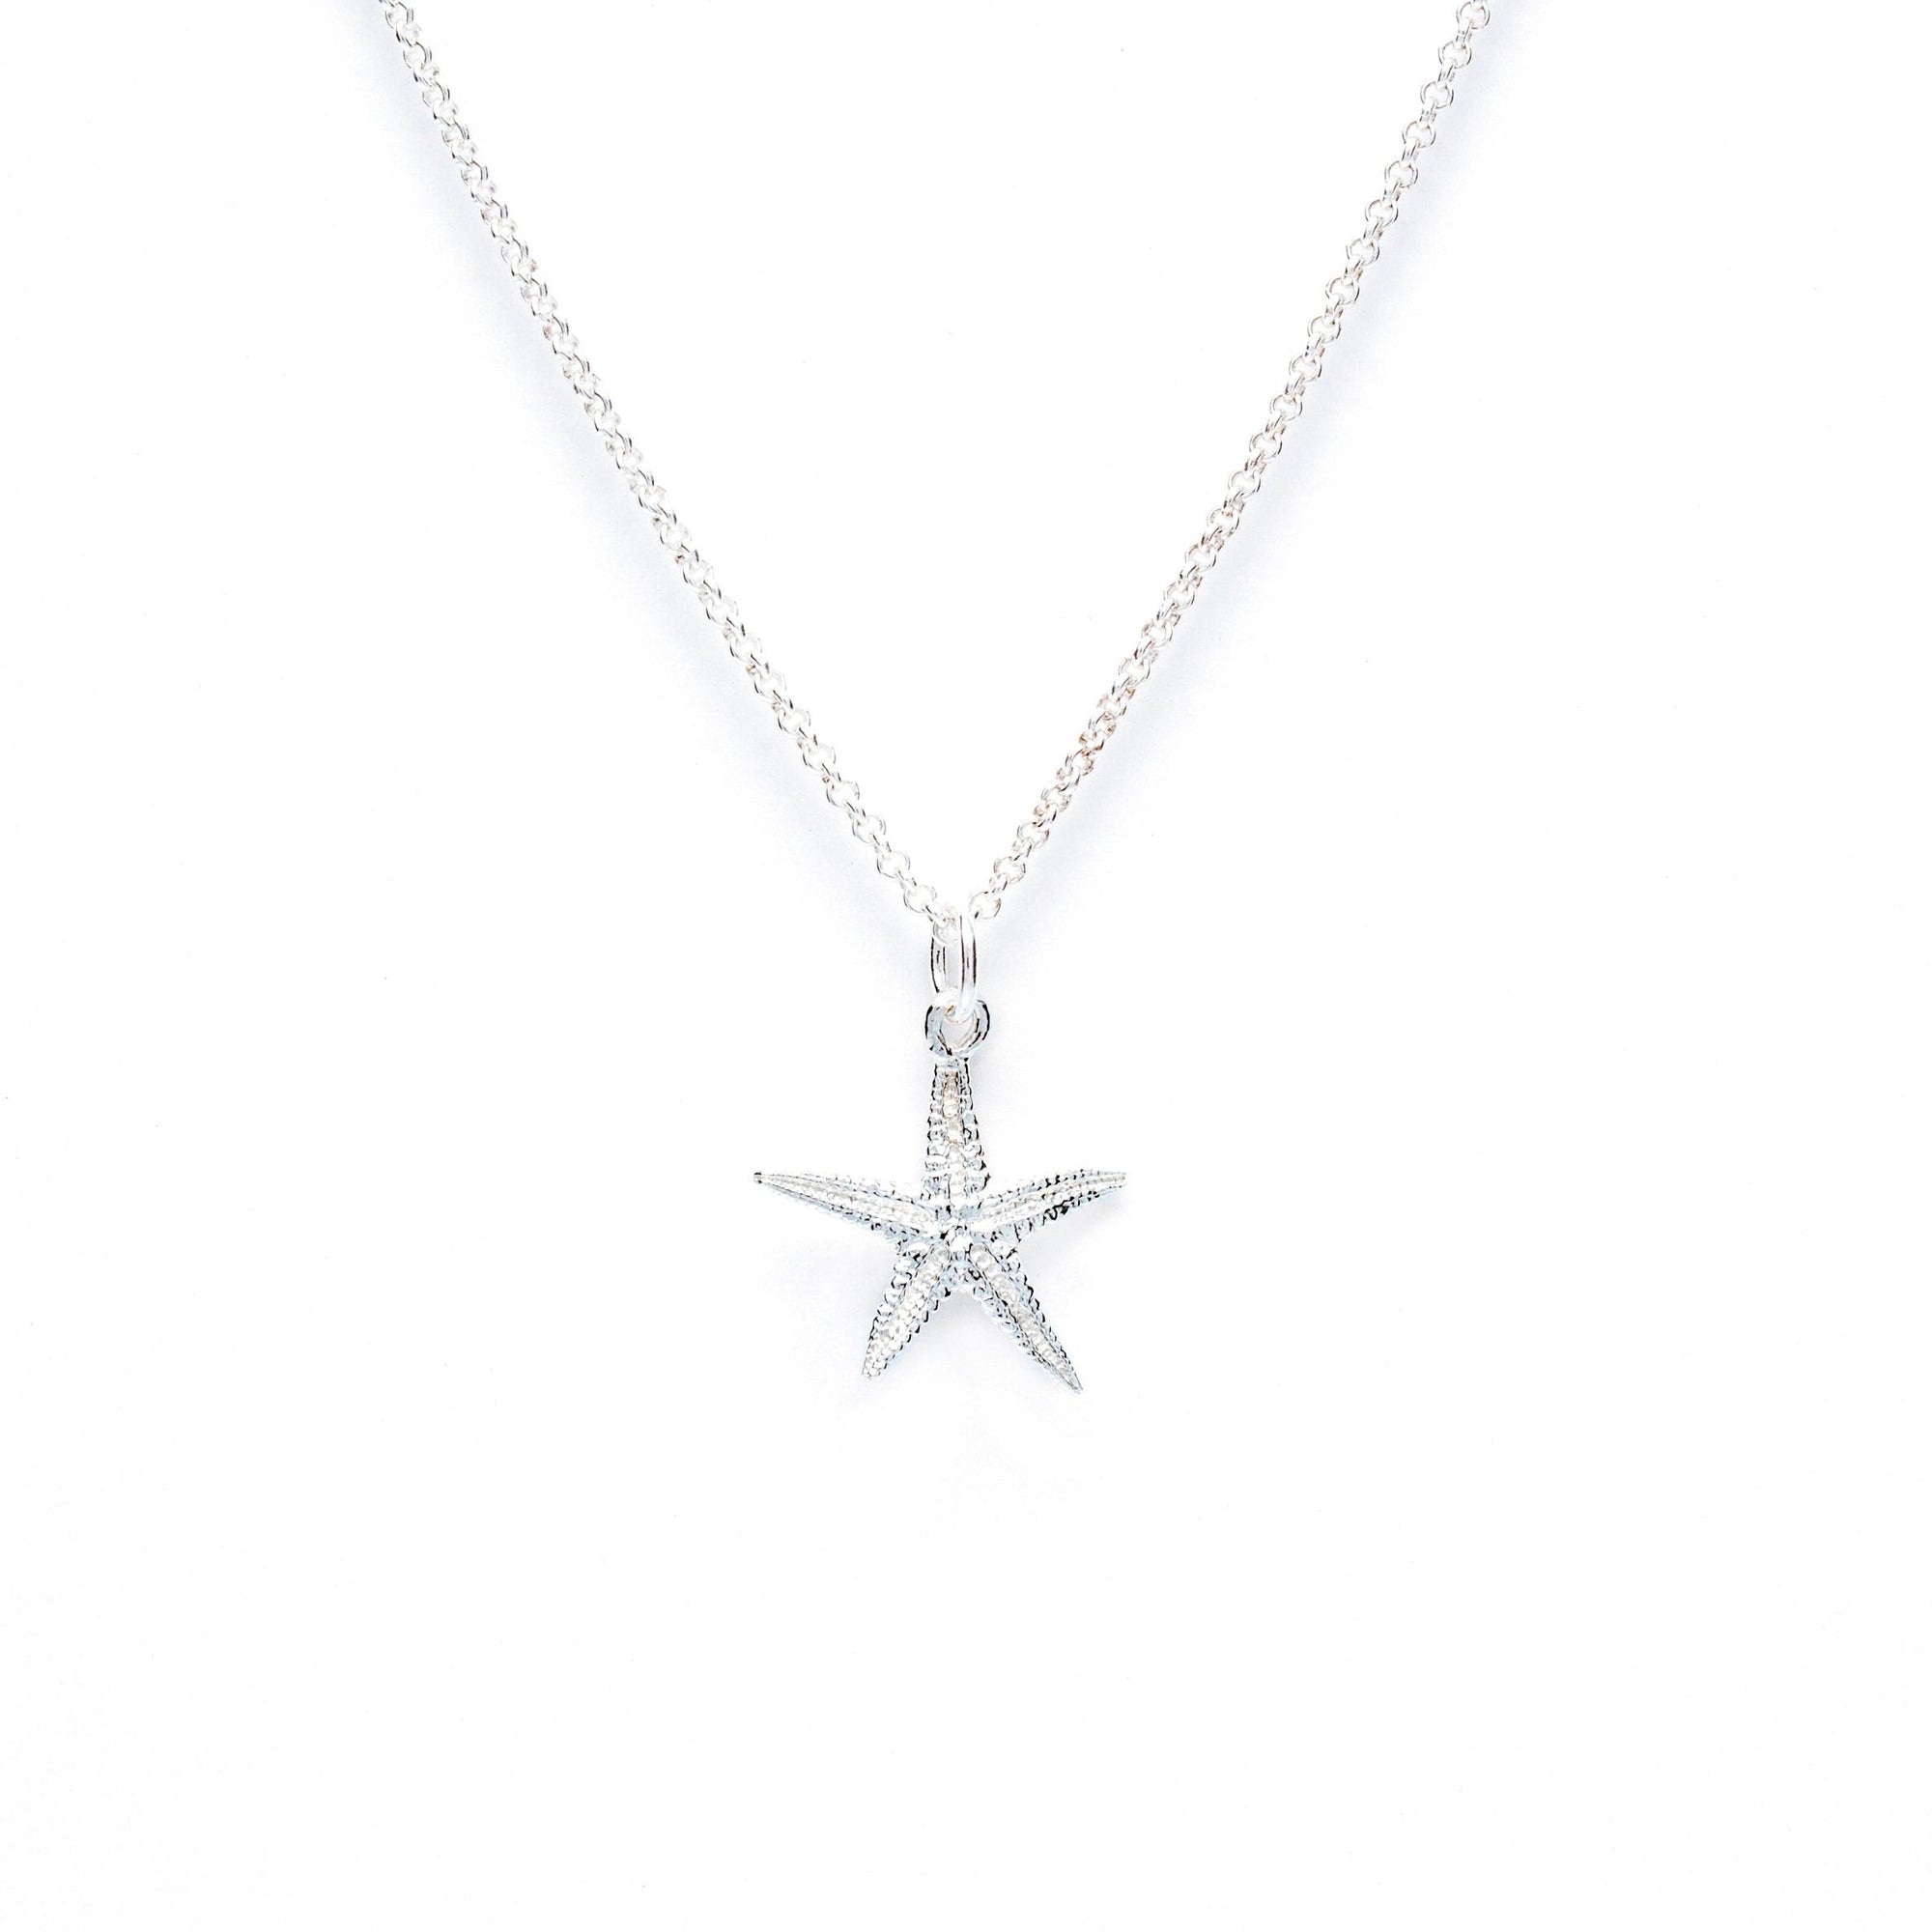 Starfish - mini Pendant - Kat Cadegan